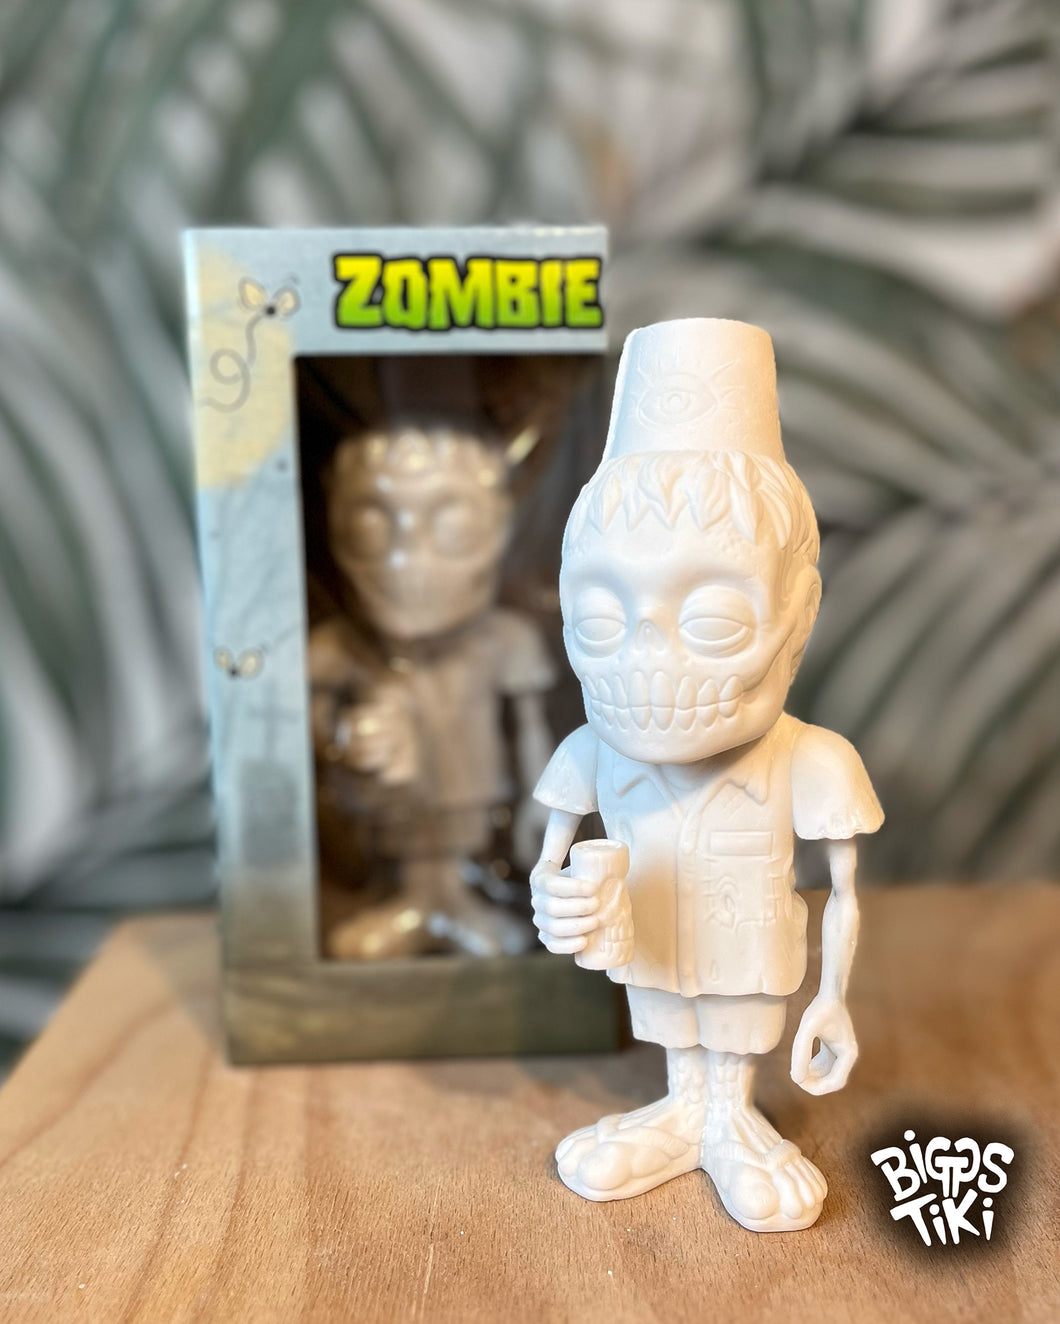 Zombie Fez Figurine - Blank